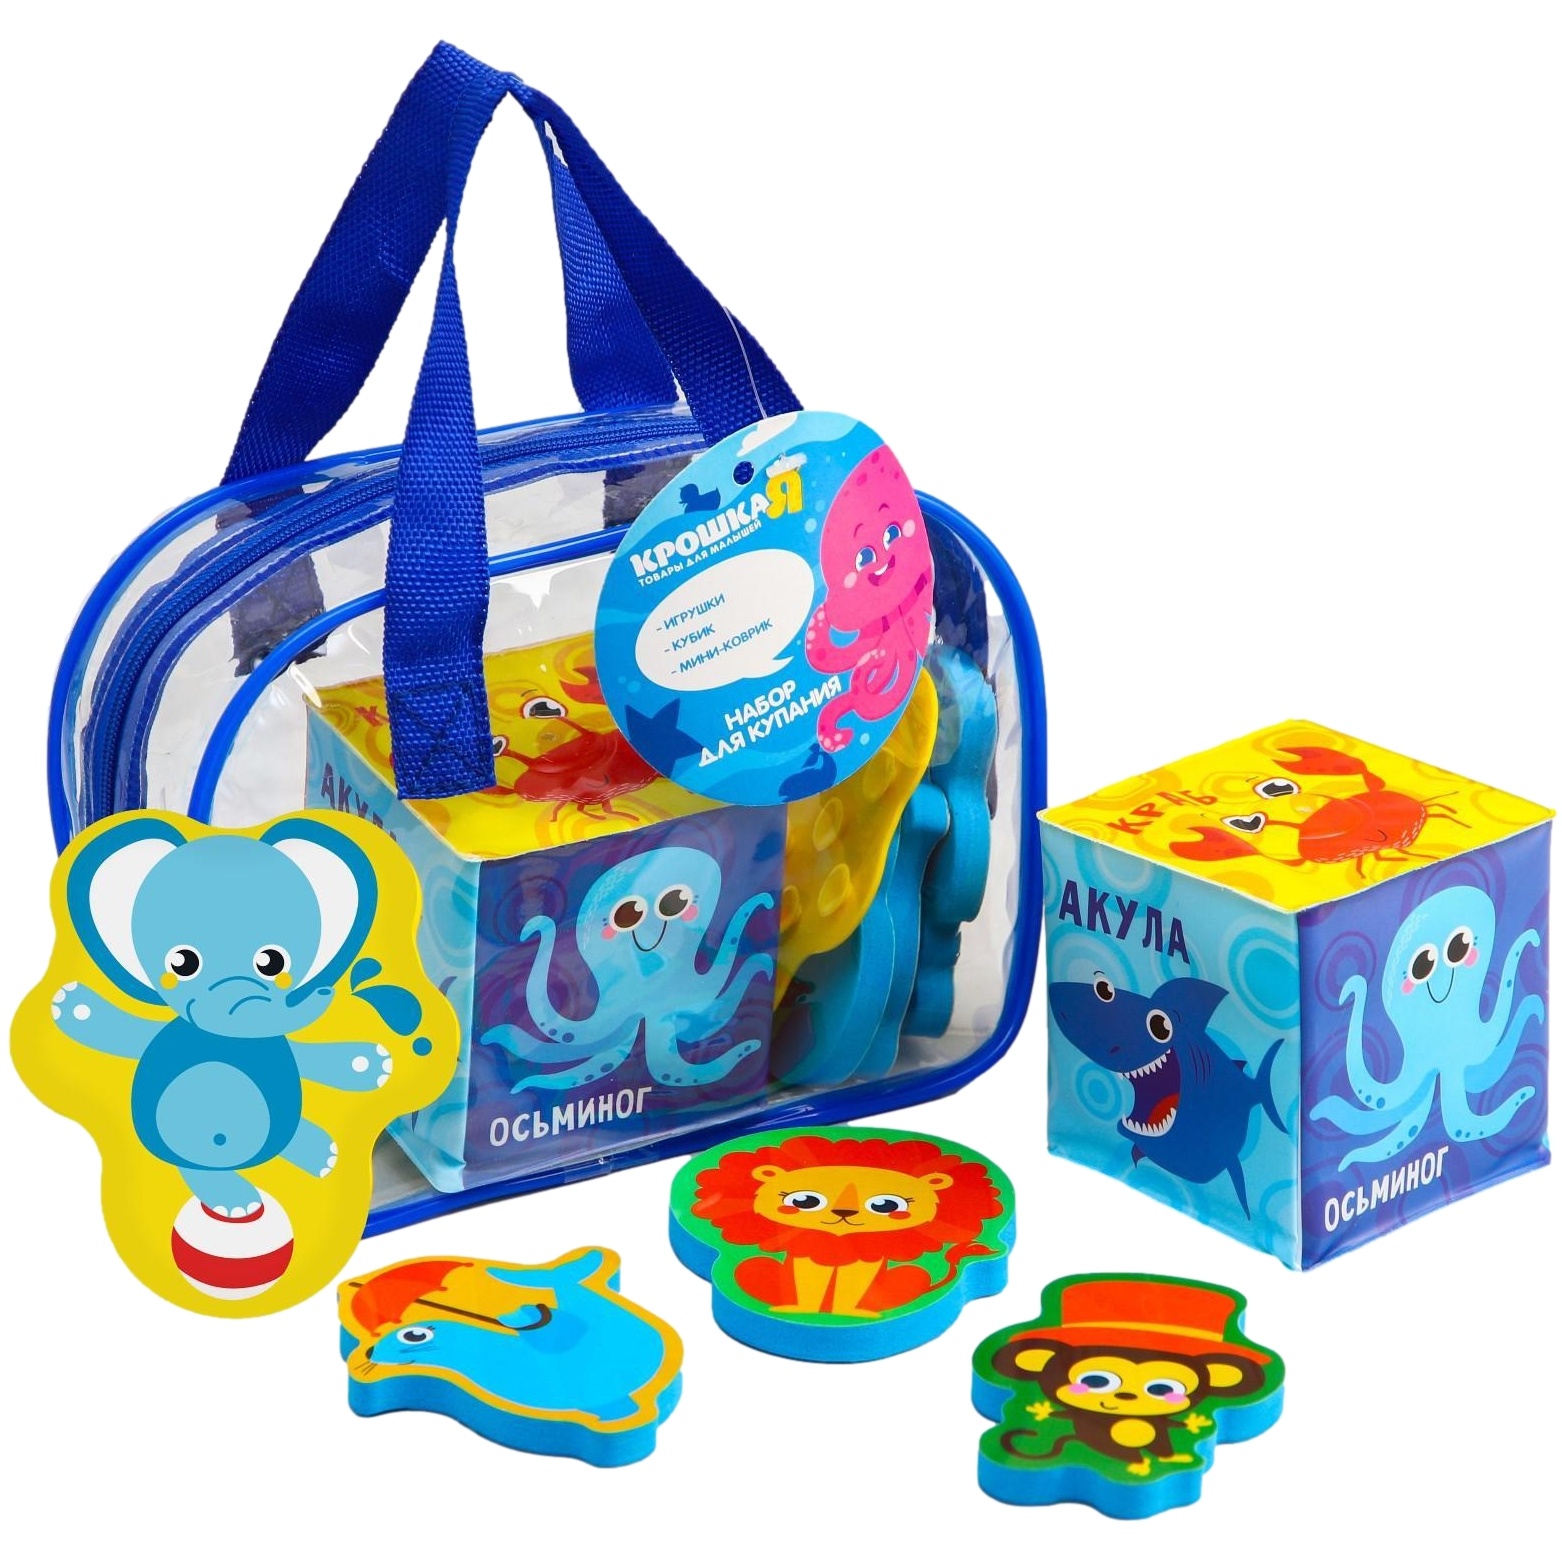 Набор для купания "цирк" в сумке: игрушка, кубик, мини-коврик 5546399